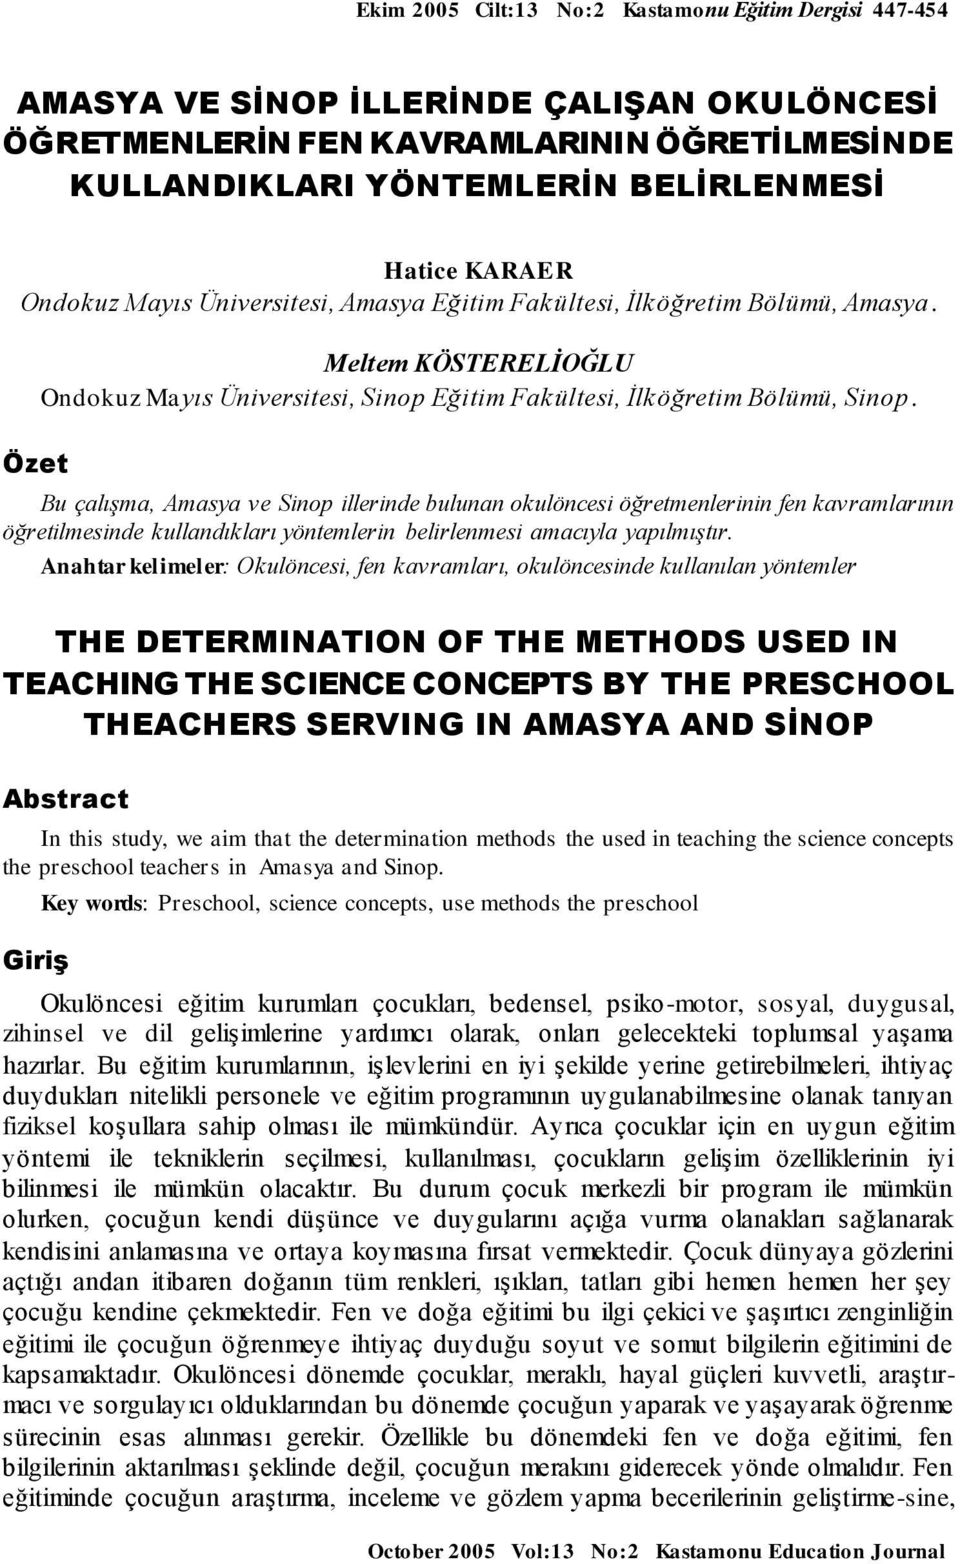 Bu çalışma, Amasya ve Sinop illerinde bulunan okulöncesi öğretmenlerinin fen kavramlarının öğretilmesinde kullandıkları yöntemlerin belirlenmesi amacıyla yapılmıştır.